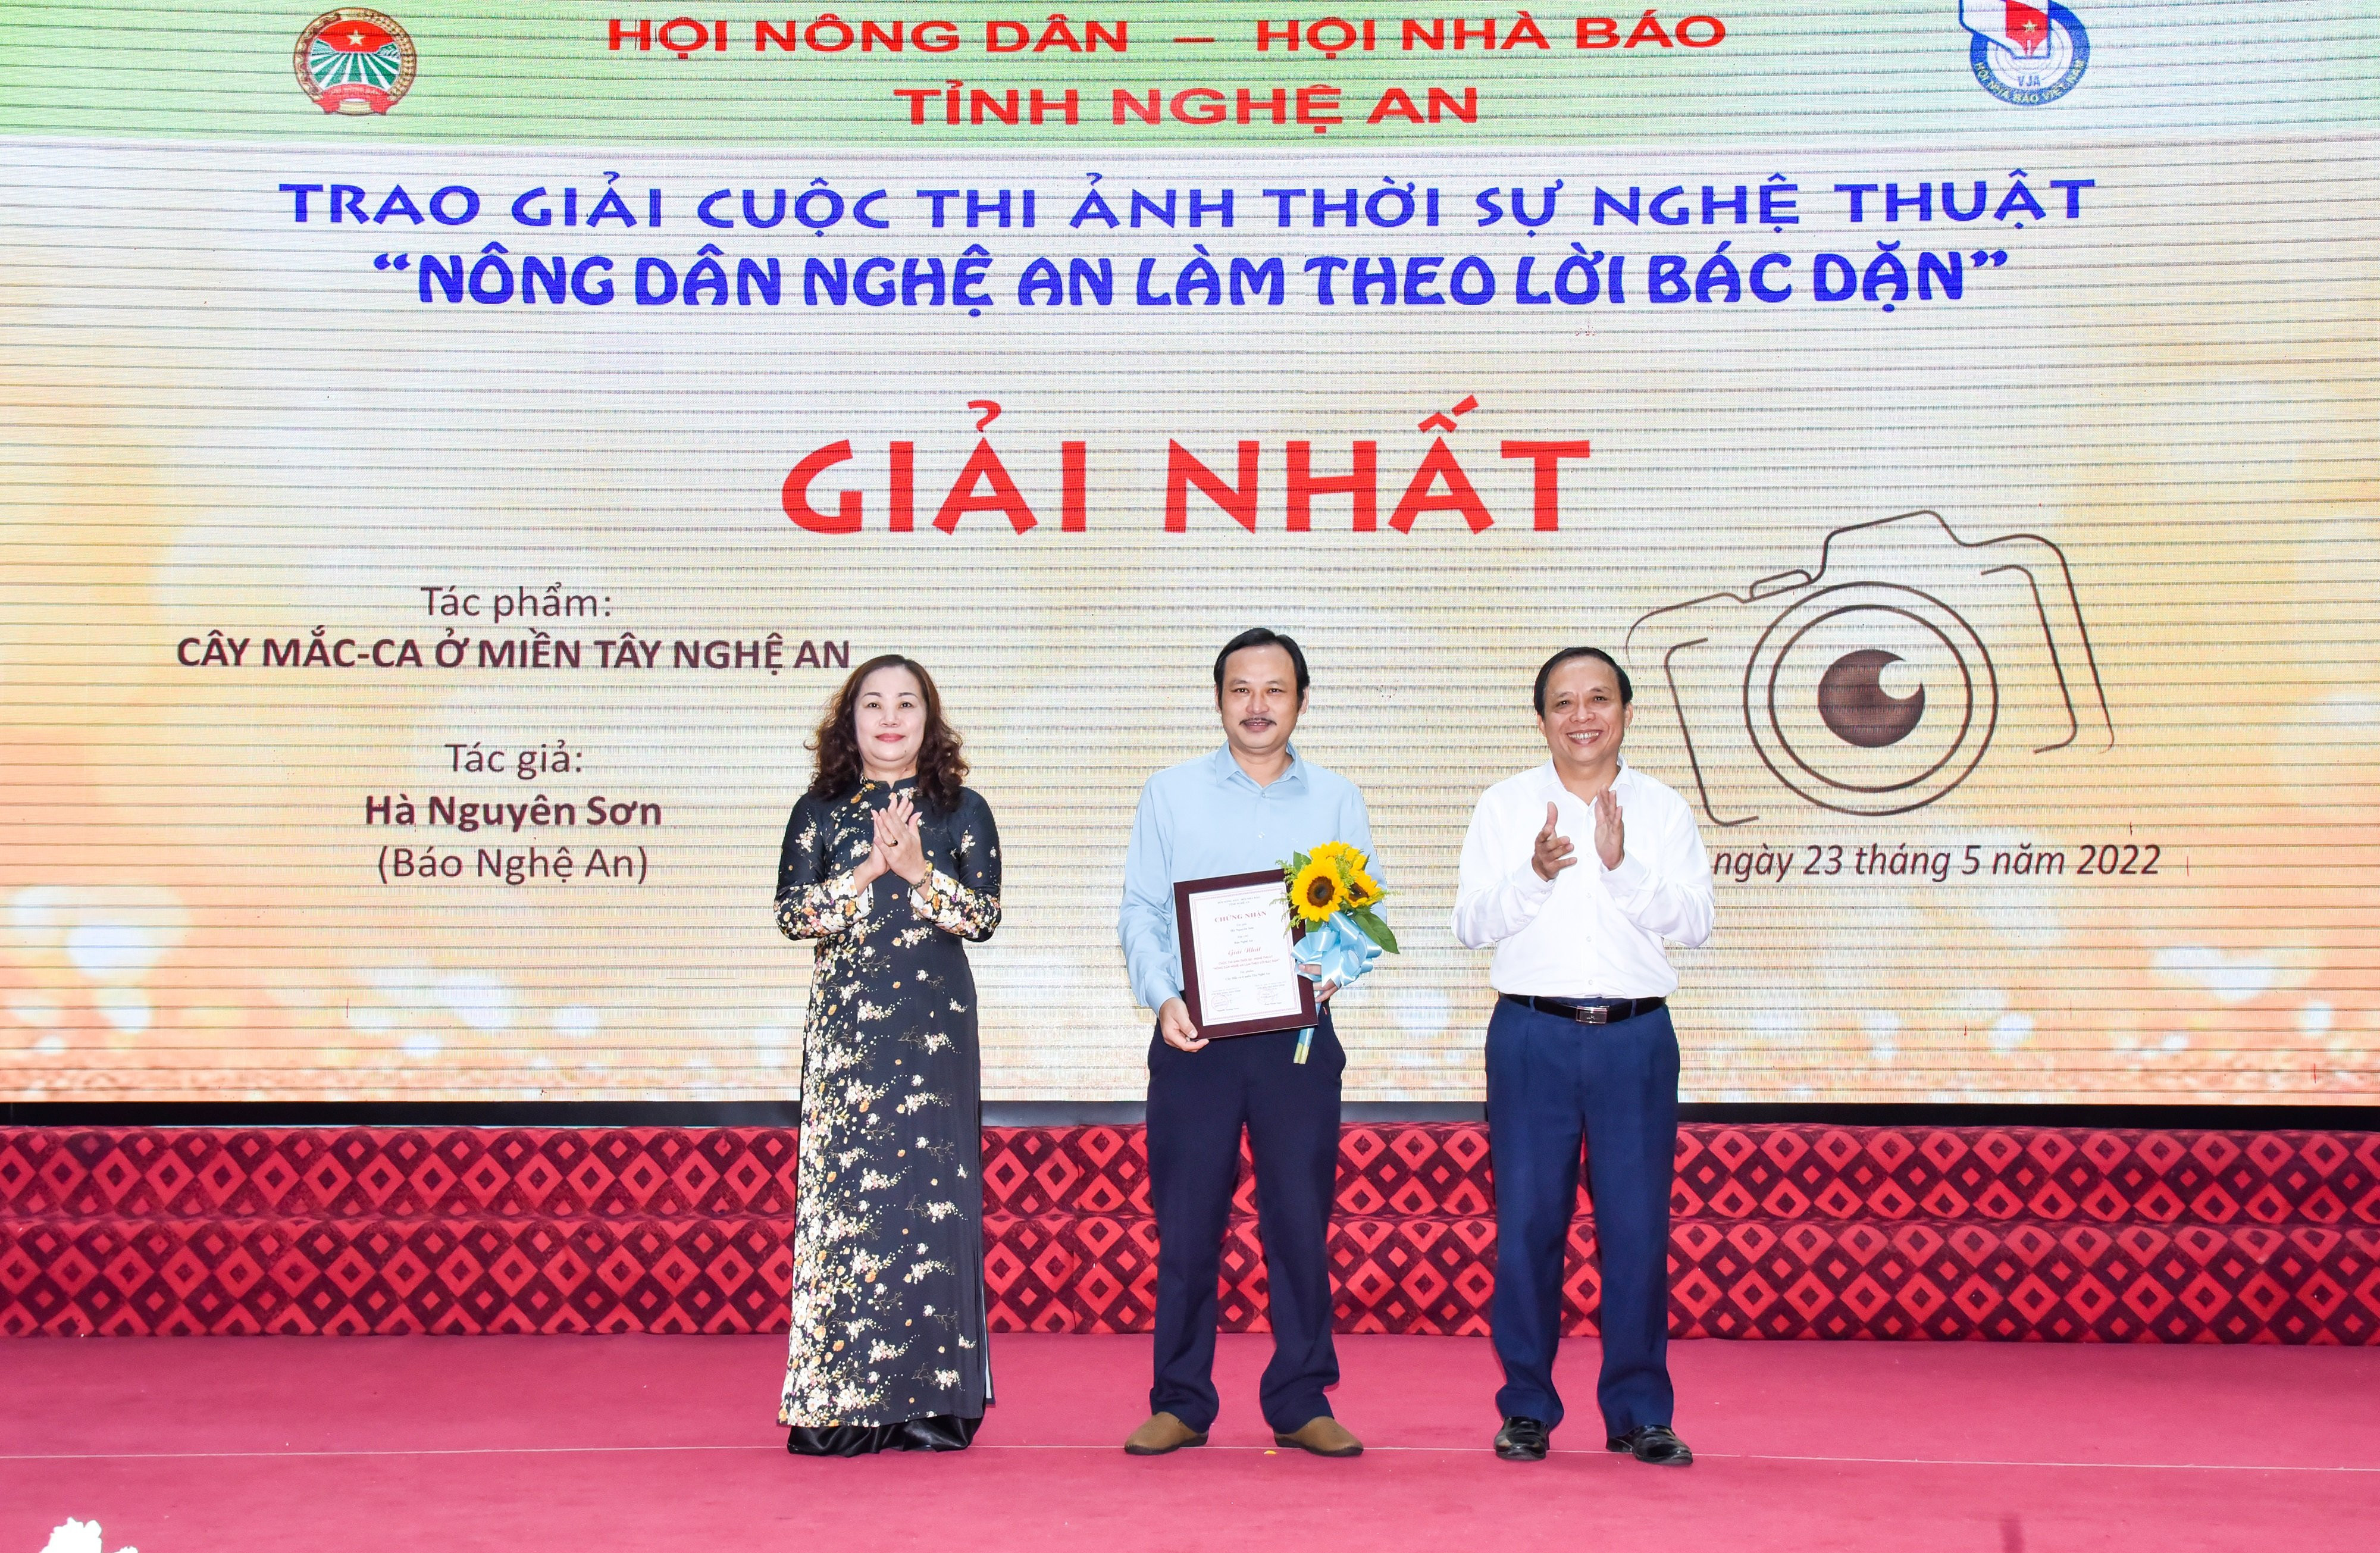 Trao giải Nhất cho tác giả Hà Nguyên Sơn - Báo Nghệ An